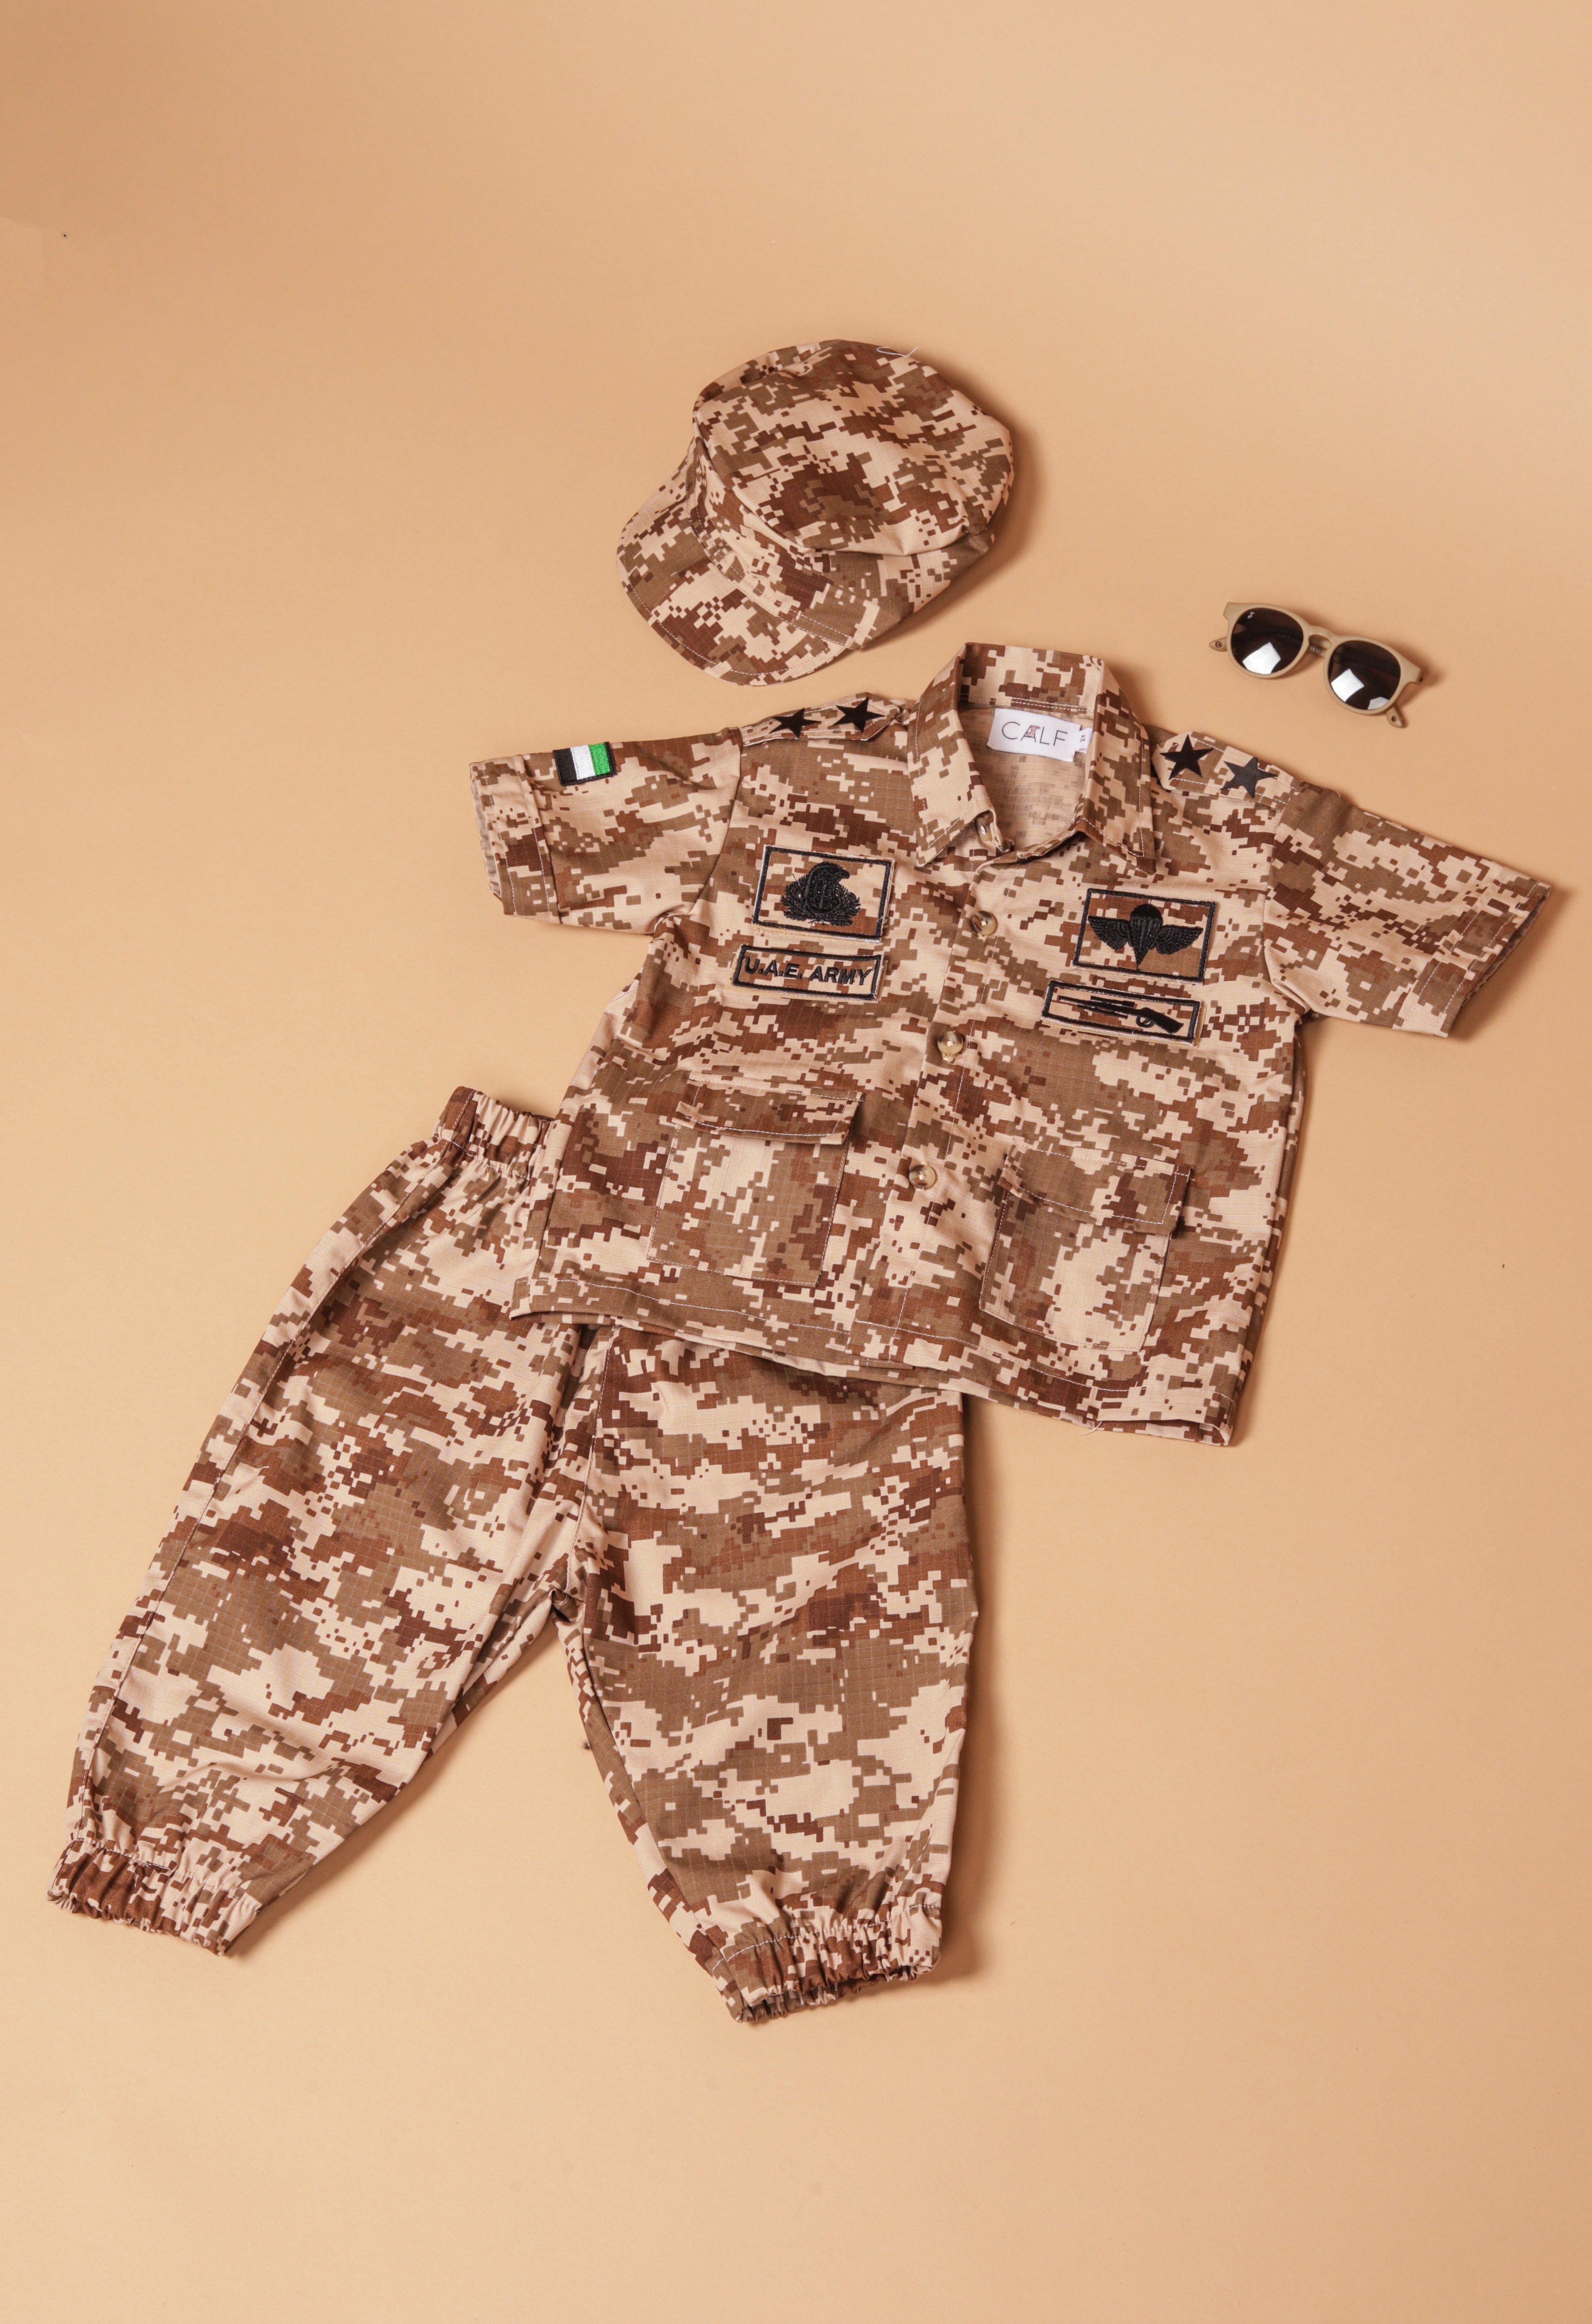 UAE Army Baby uniform